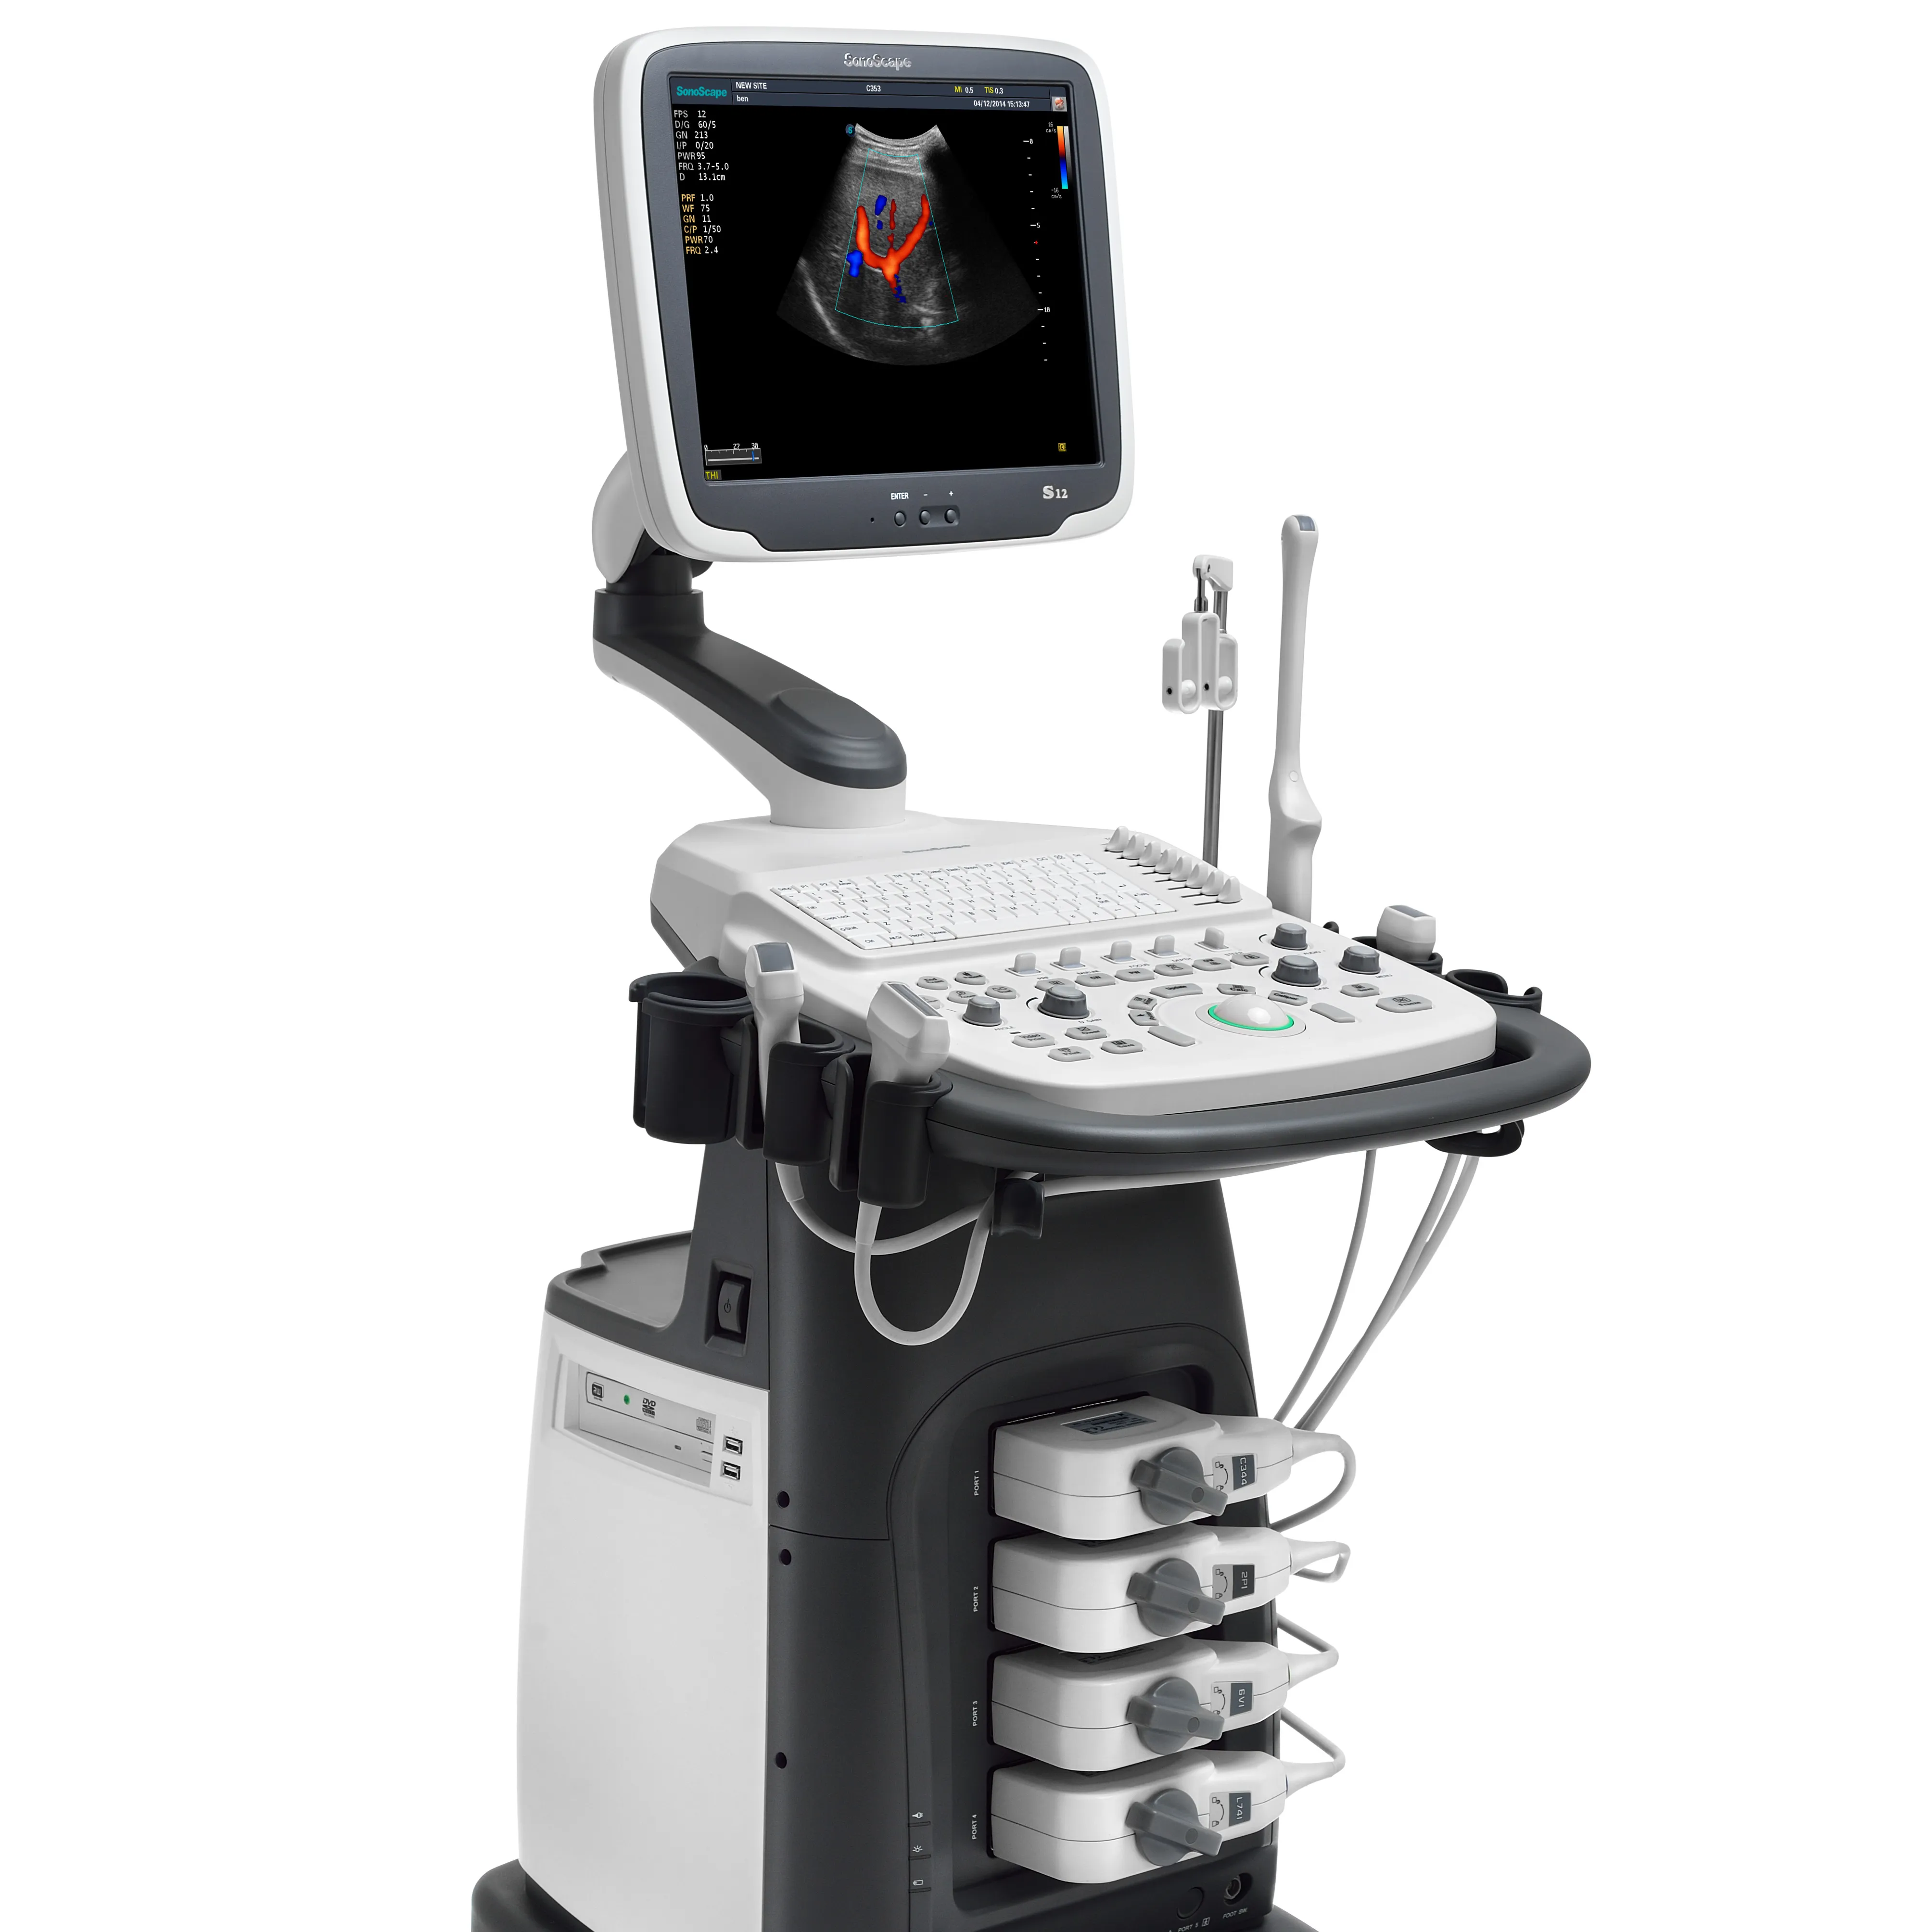 S12 Sonoscape ultrasonido रंग डॉपलर अल्ट्रासाउंड स्कैन मशीन बिक्री के लिए चिकित्सा उपकरण ट्रांसड्यूसर कीमत